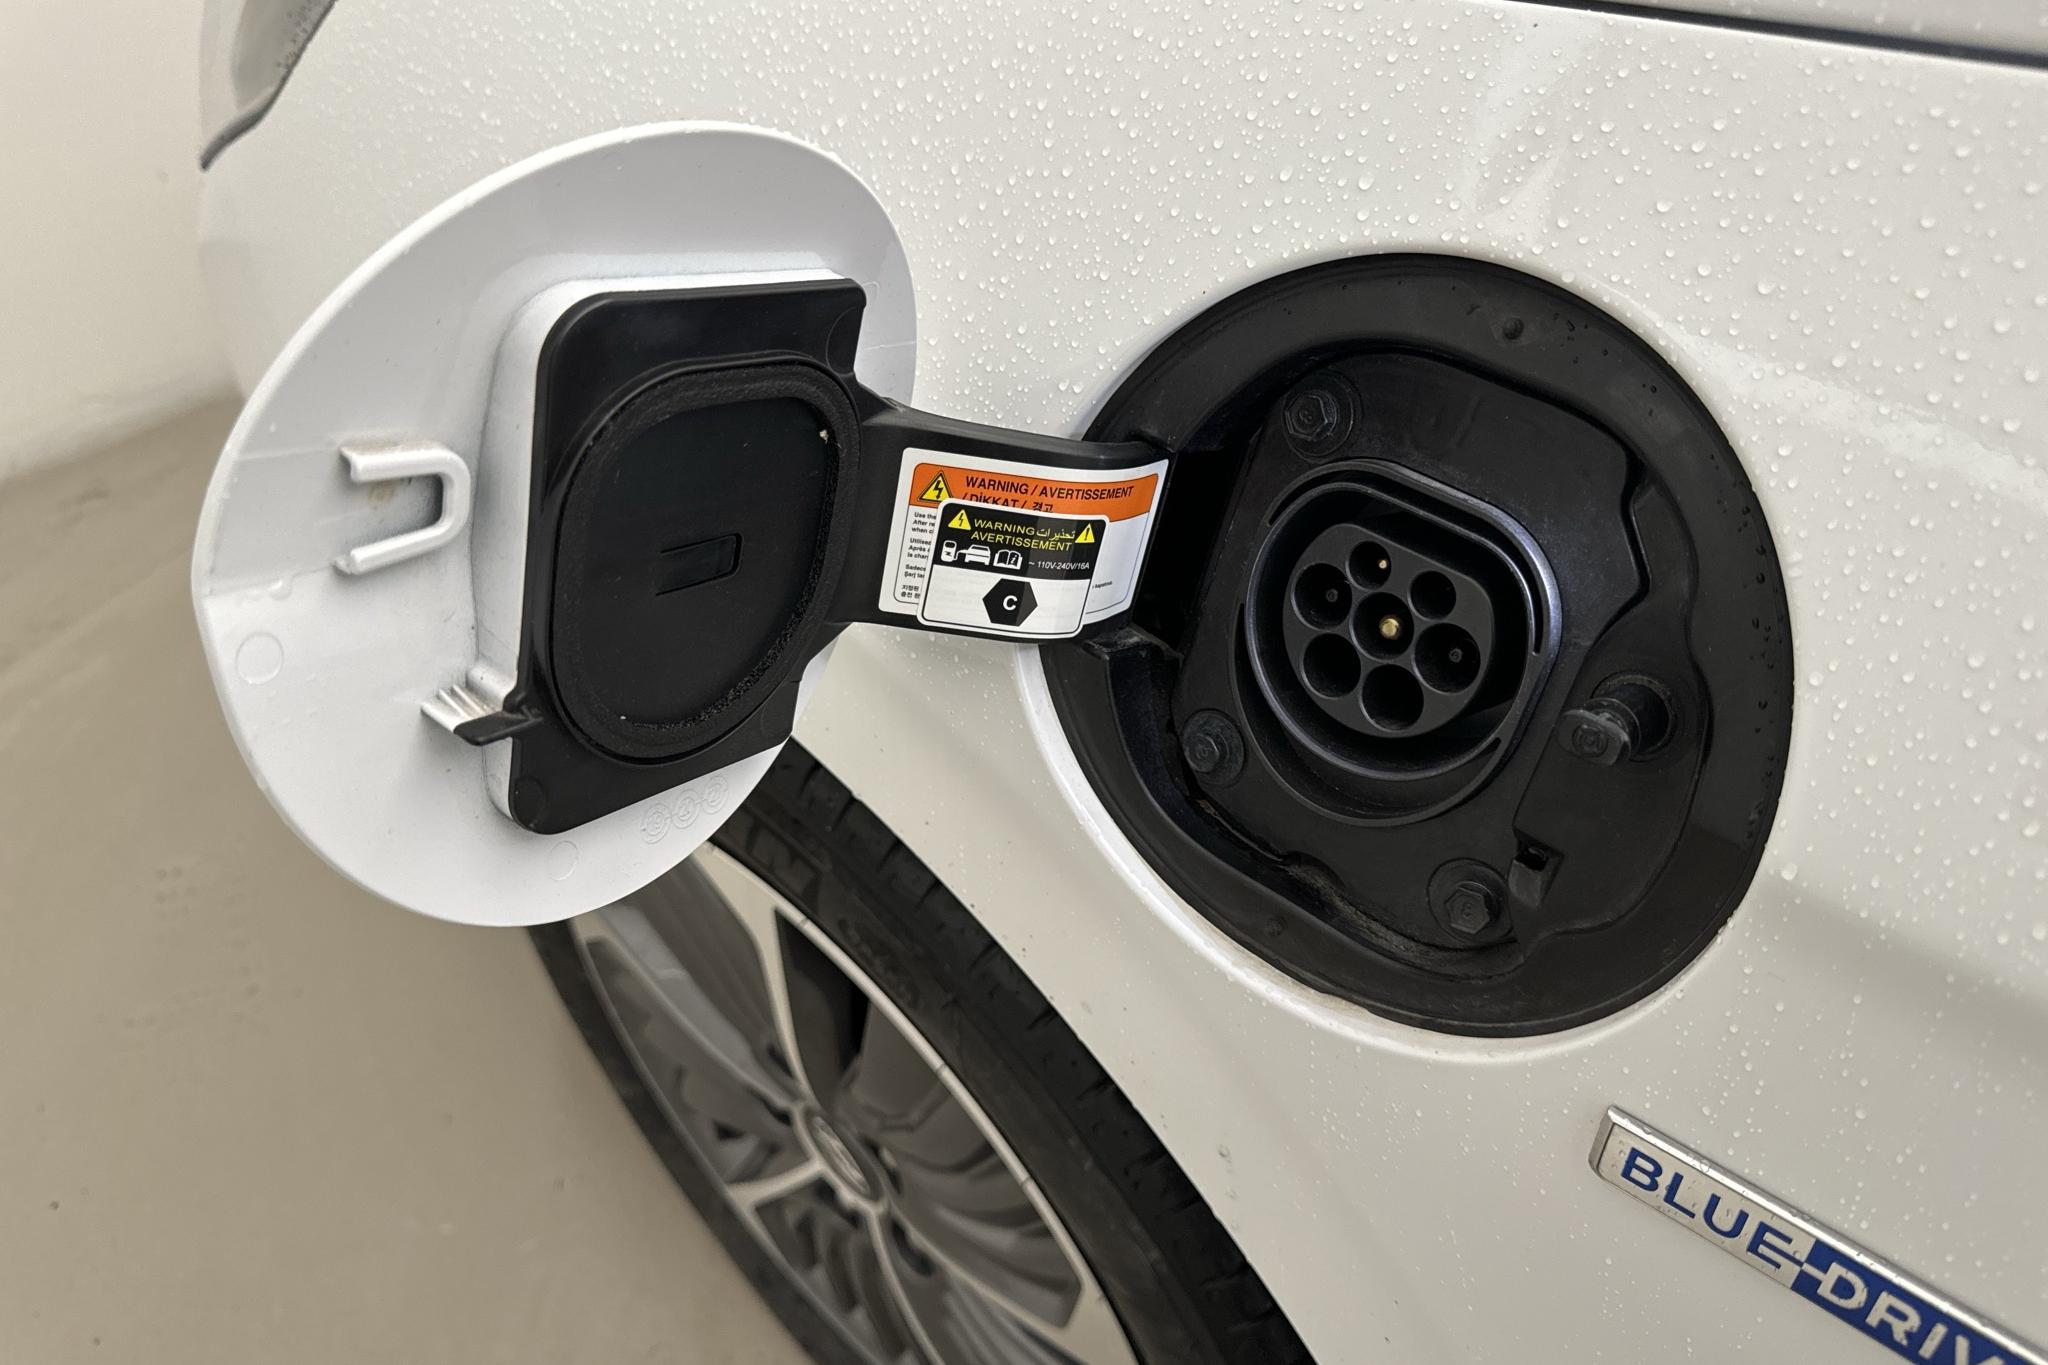 Hyundai IONIQ Plug-in (141hk) - 39 670 km - Automatyczna - biały - 2020